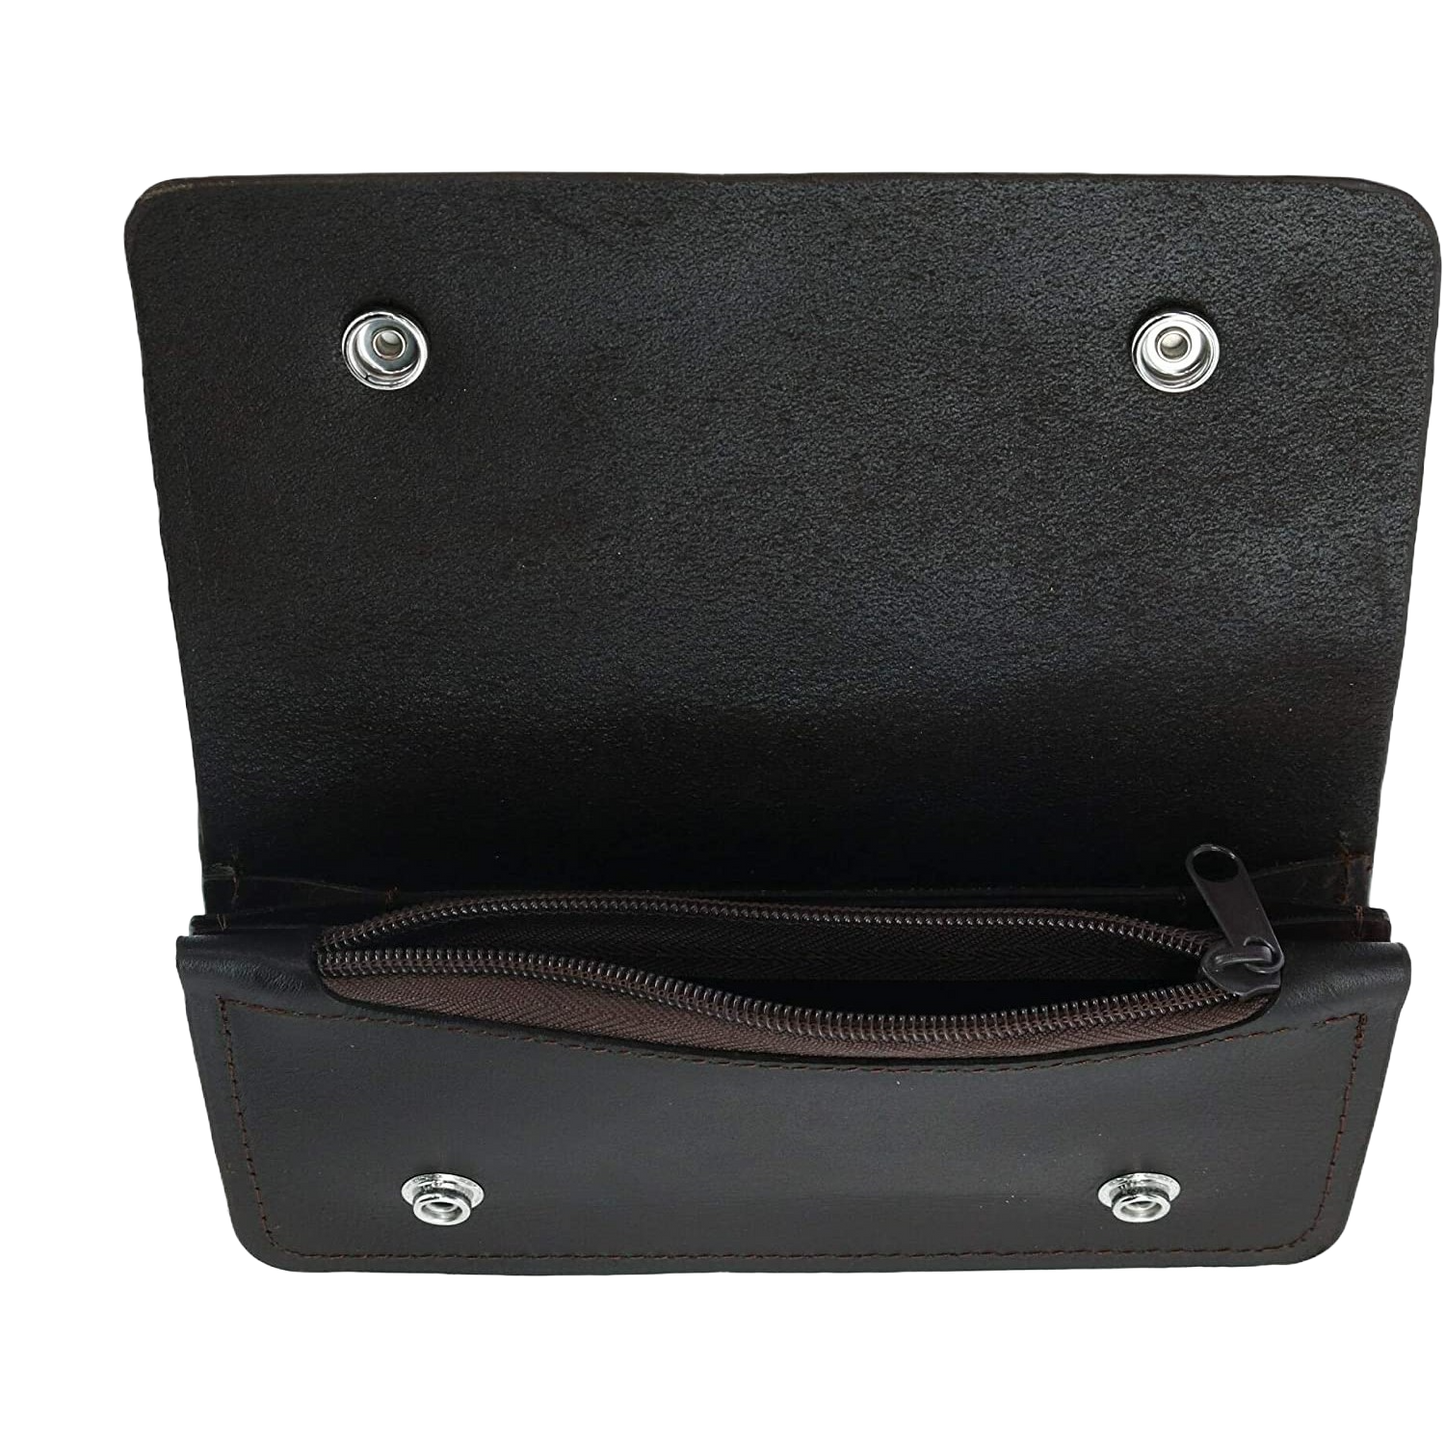 M&F Western Men's Trucker Key Chain & Brown Leather Wallet 0602202